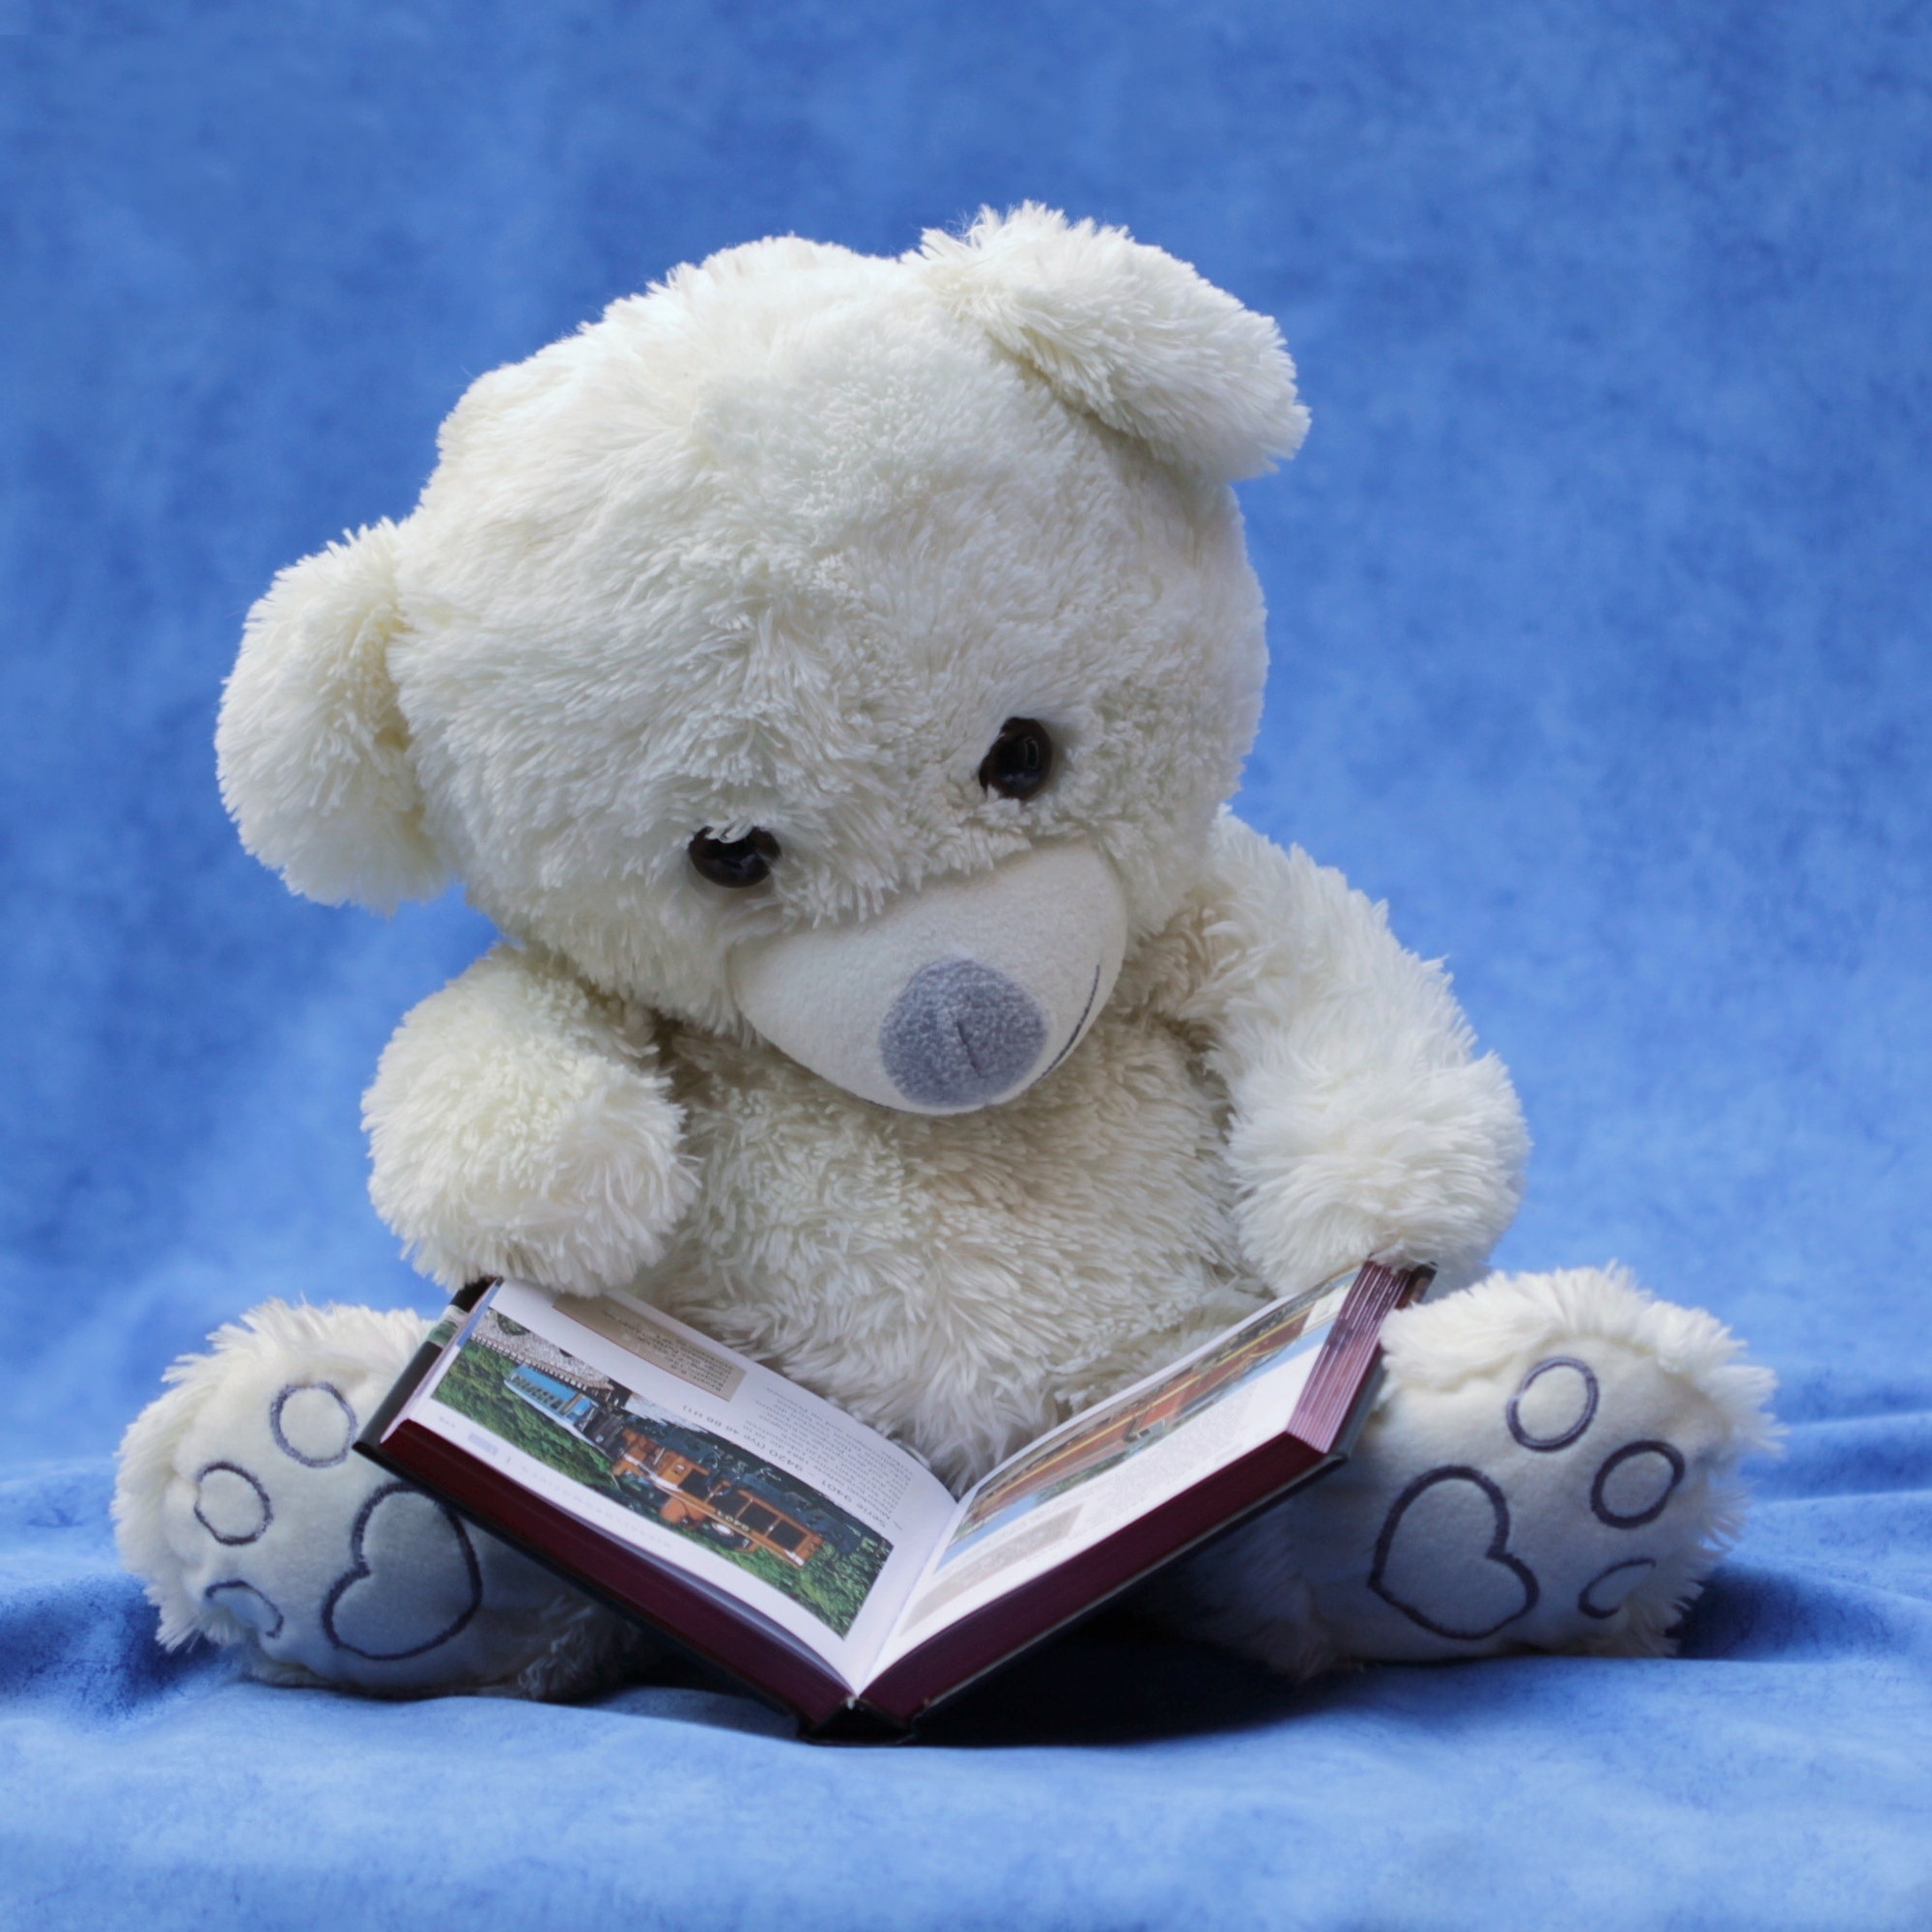 white teddy bear plush toy reading book